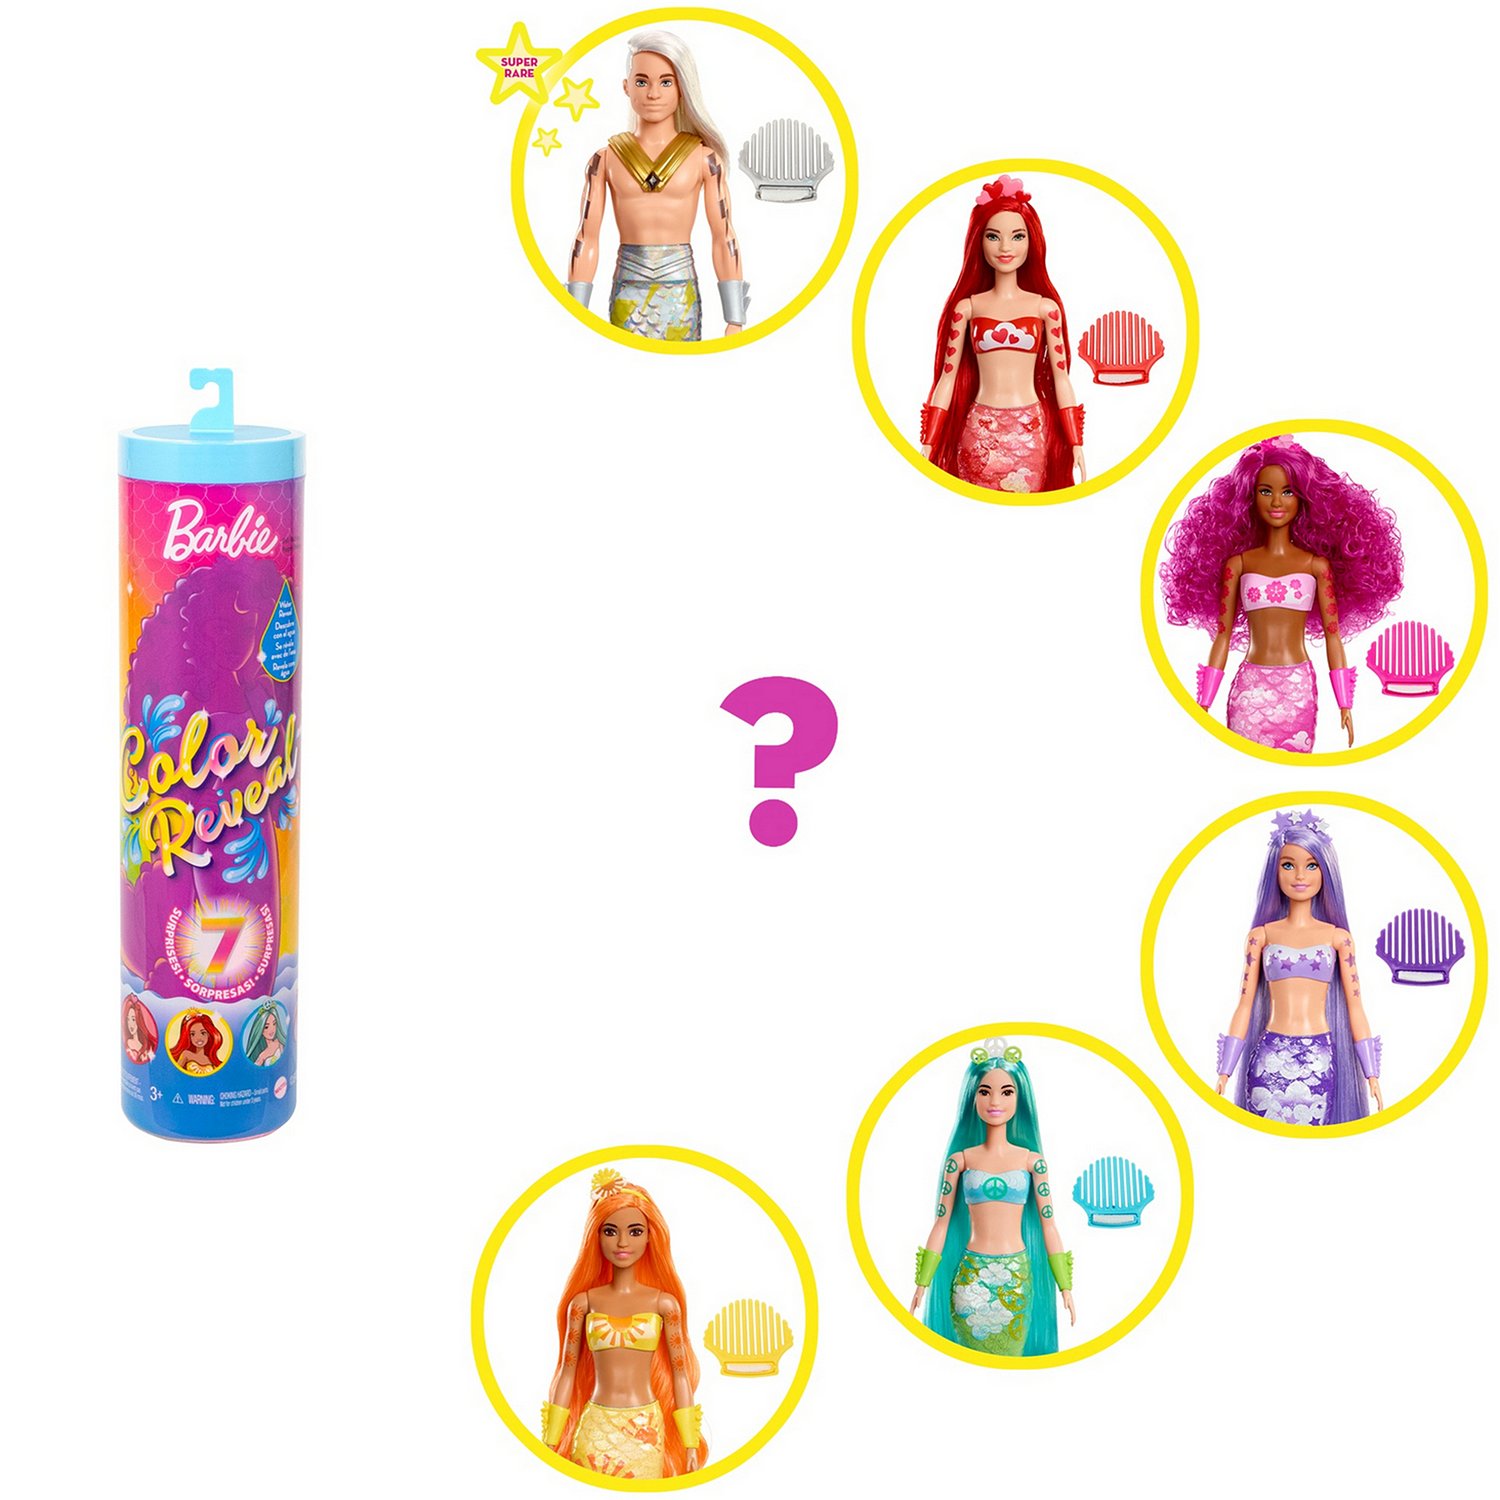 Кукла Barbie Радужная русалка в непрозрачной упаковке (Сюрприз) HCC46